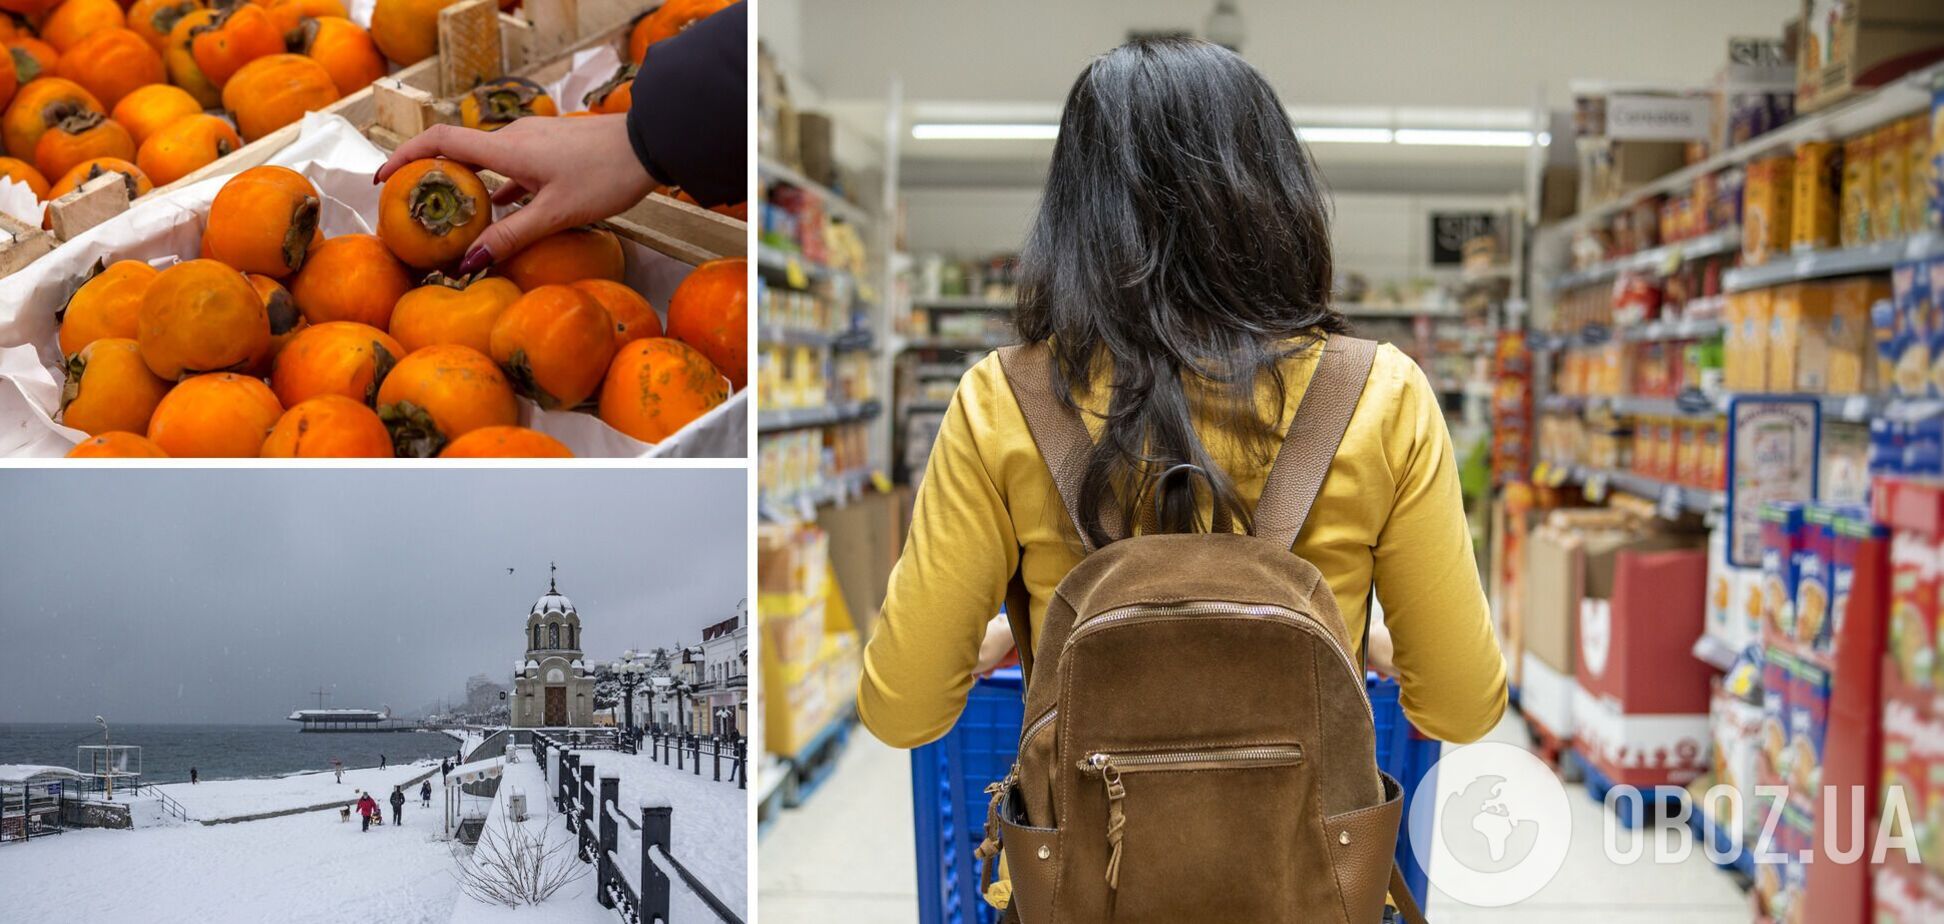 Народ беднеет, а цены на продукты растут: жители Крыма рассказали, почему готовятся к скромному Новому году